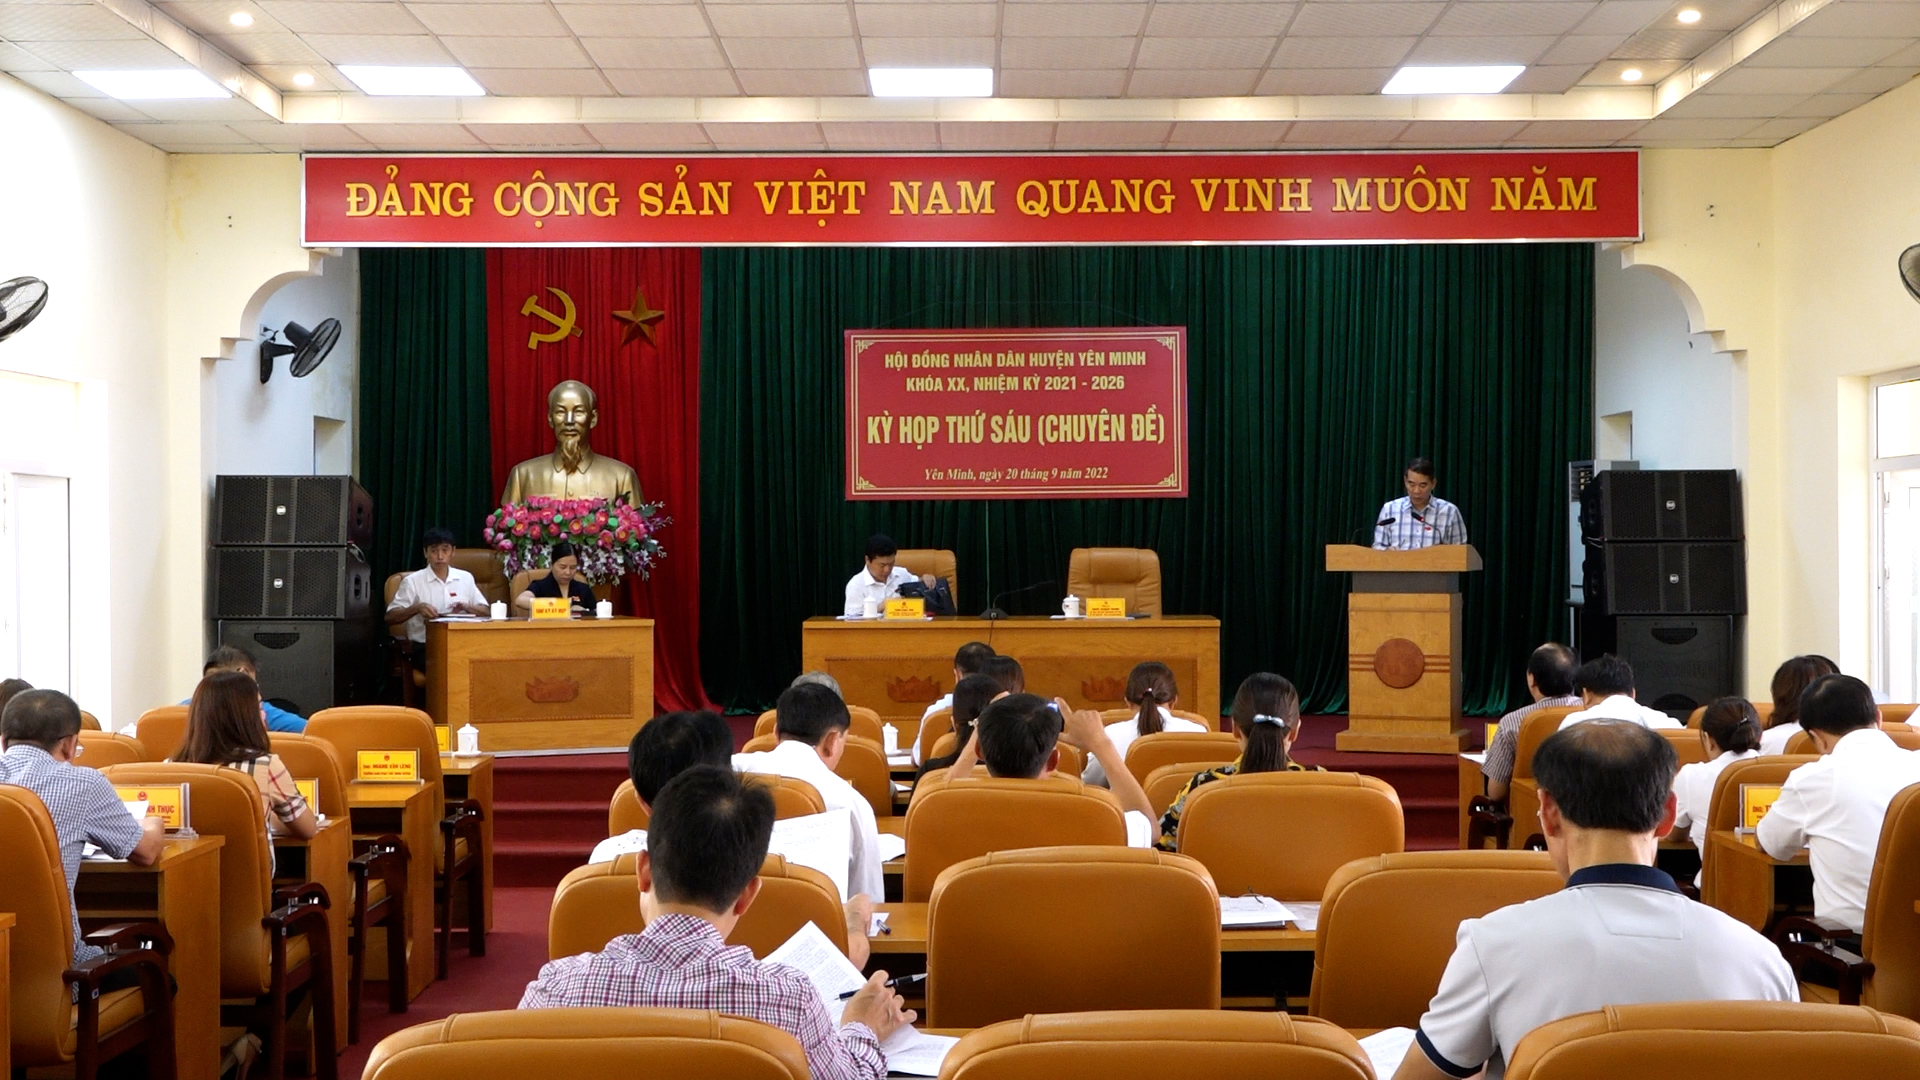 Kỳ họp thứ Sáu (Chuyên đề) HĐND huyện Yên Minh khóa XX nhiệm kỳ 2021 - 2026